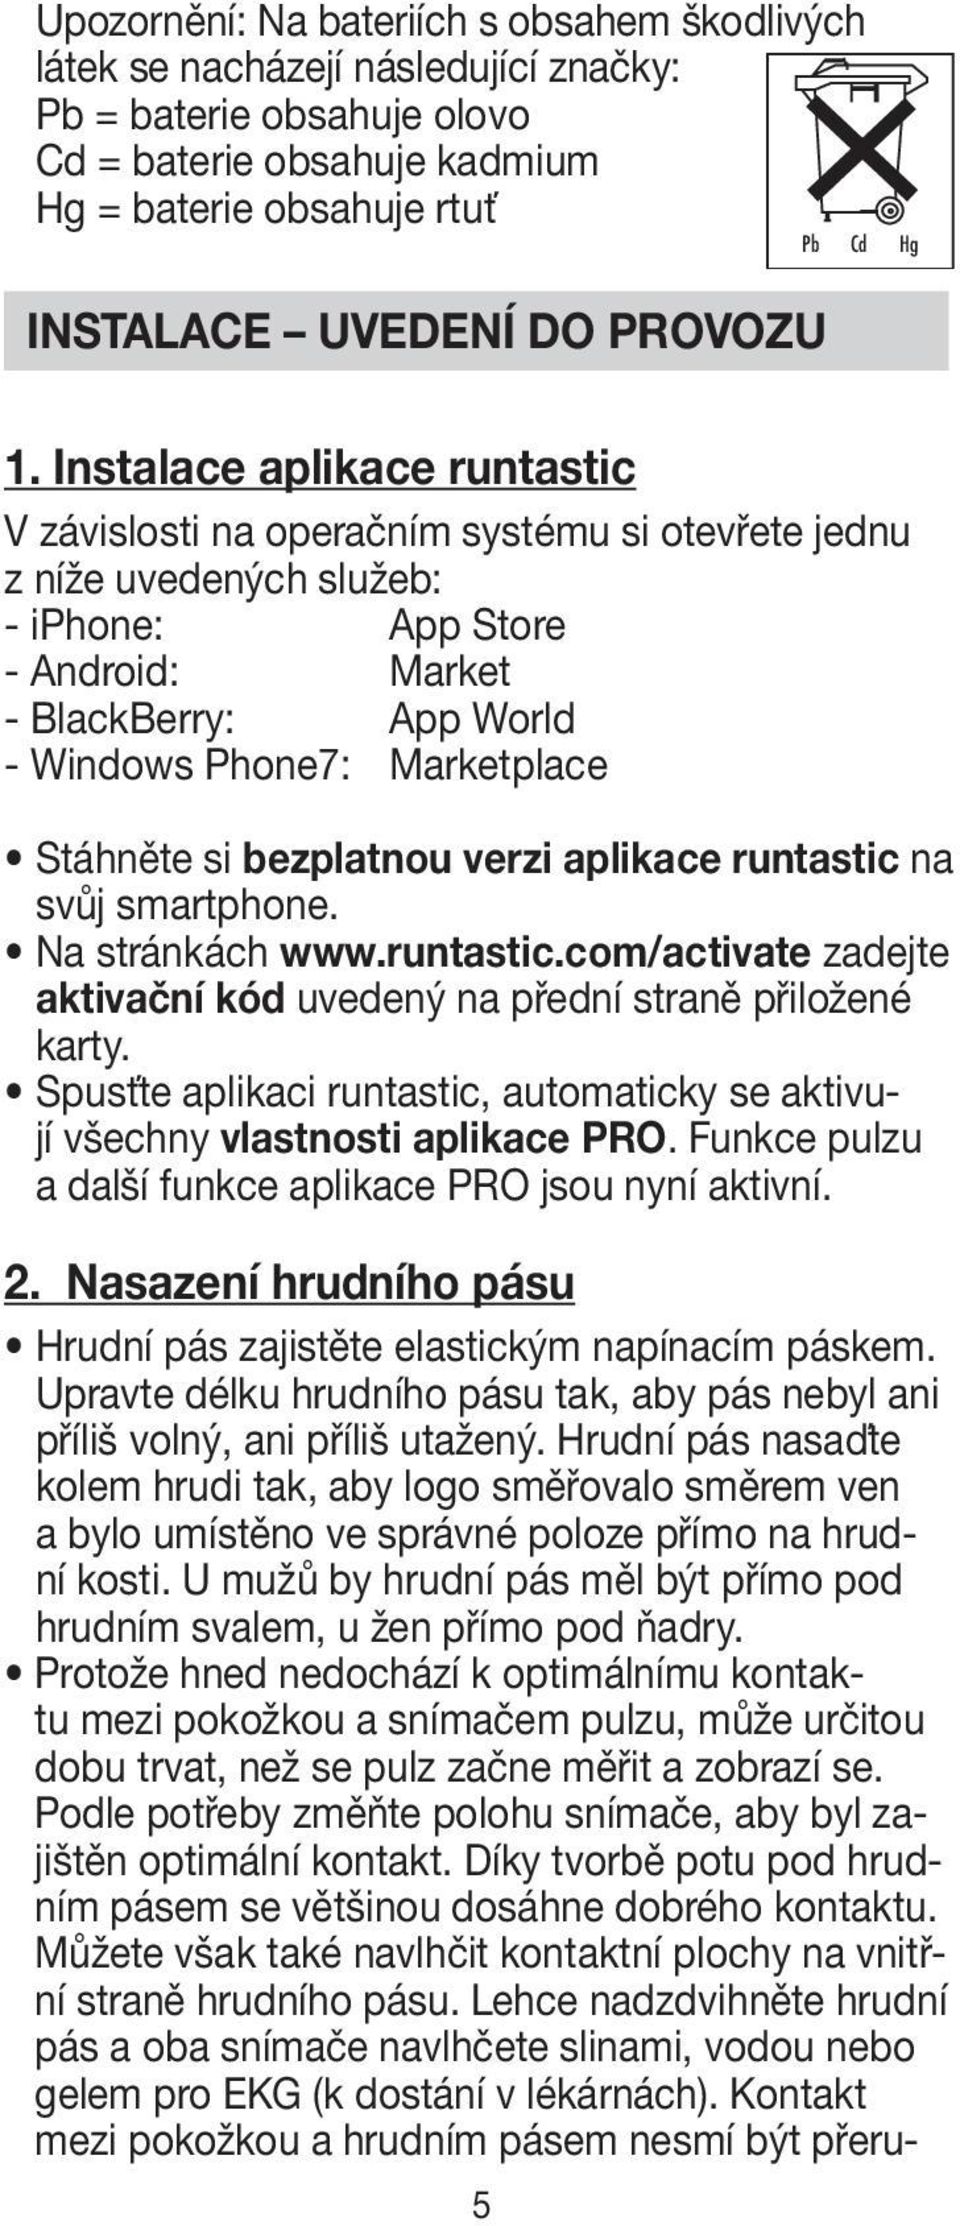 Instalace aplikace runtastic V závislosti na operačním systému si otevřete jednu z níže uvedených služeb: - iphone: App Store - Android: Market - BlackBerry: App World - Windows Phone7: Marketplace